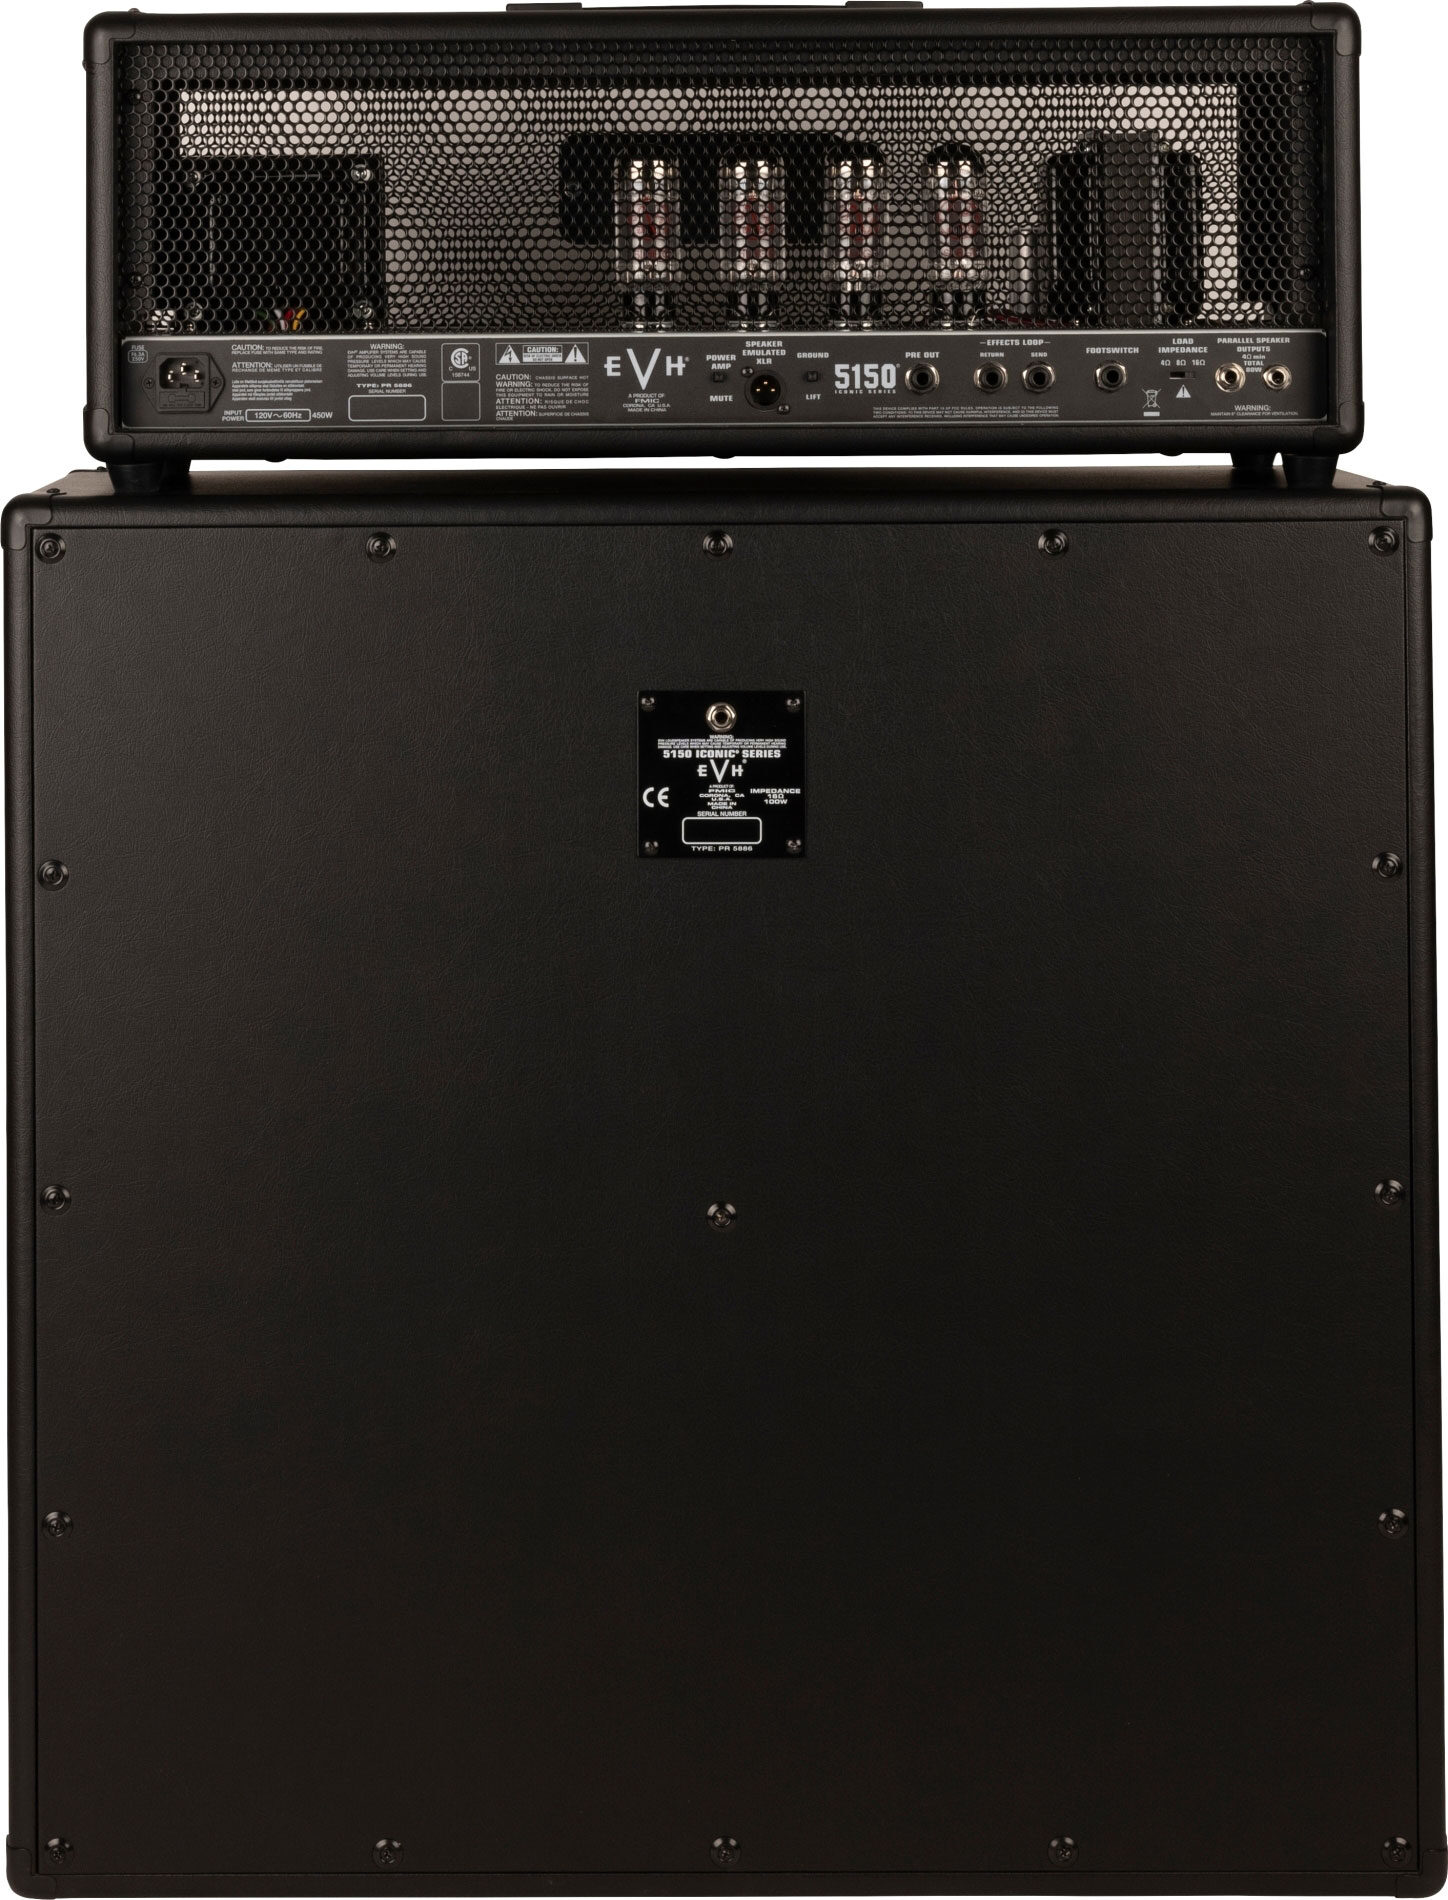 EVH　Head　Iconic　Van　5150　Eddie　Halen　Amplifier　Series　Tube